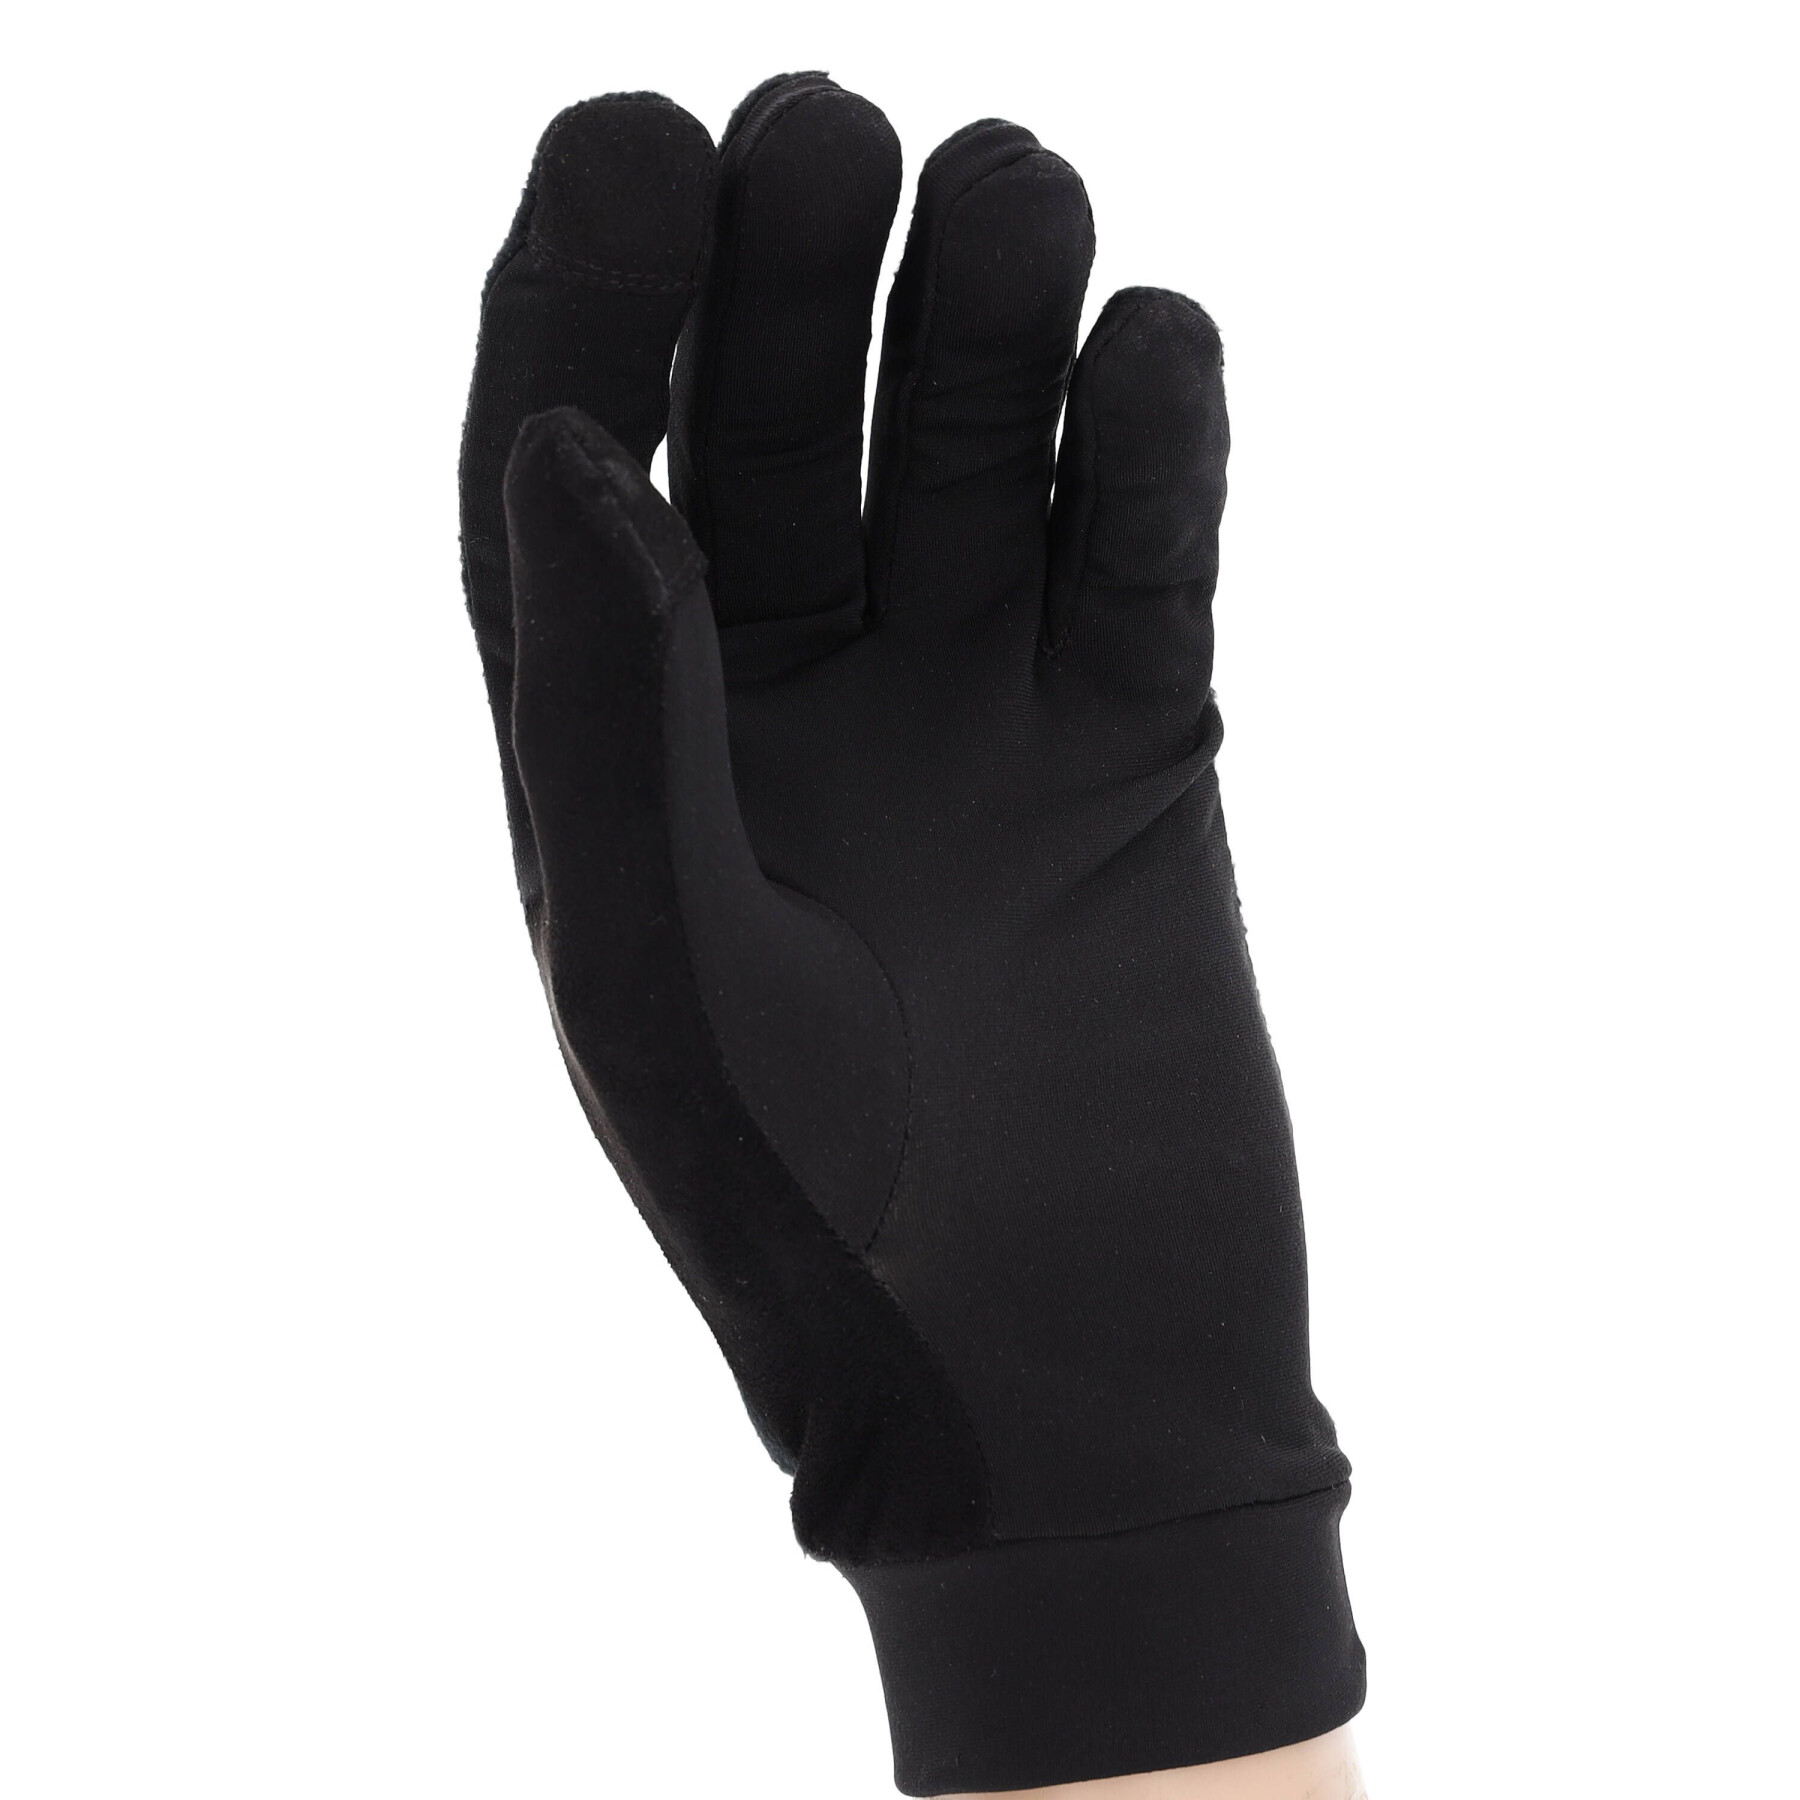 Running gloves R Flect 500